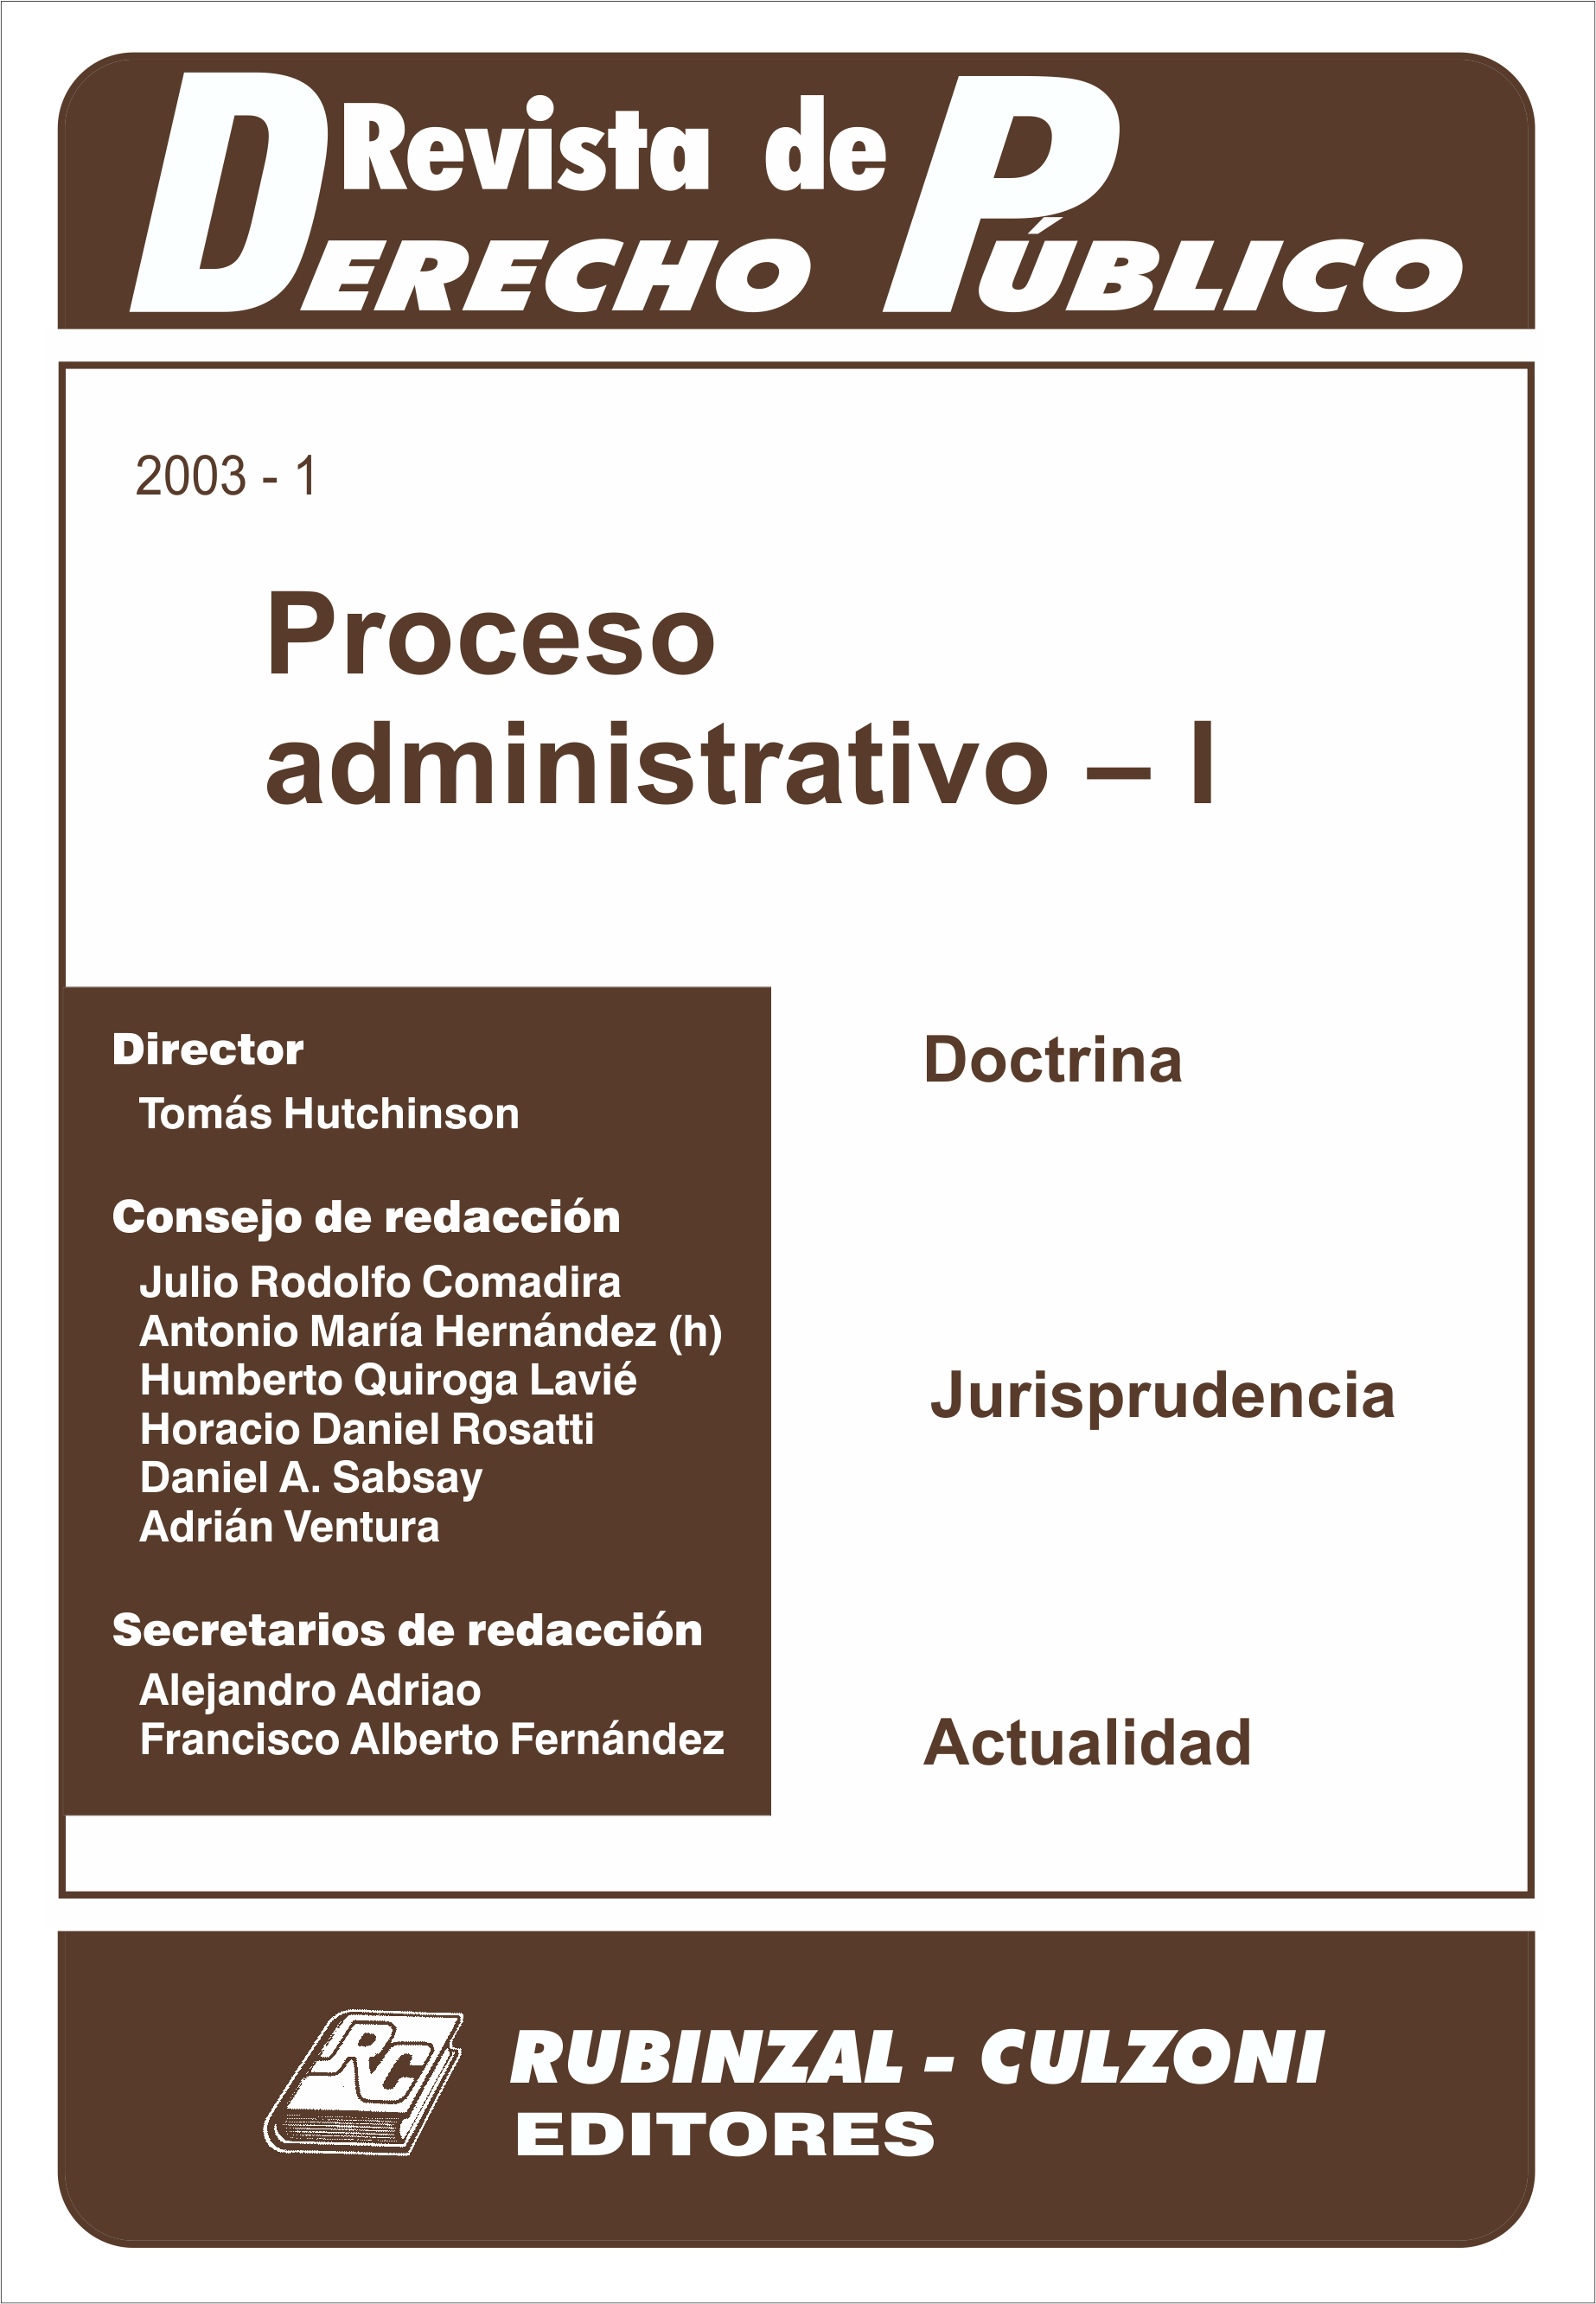 Revista de Derecho Público - Proceso administrativo - I